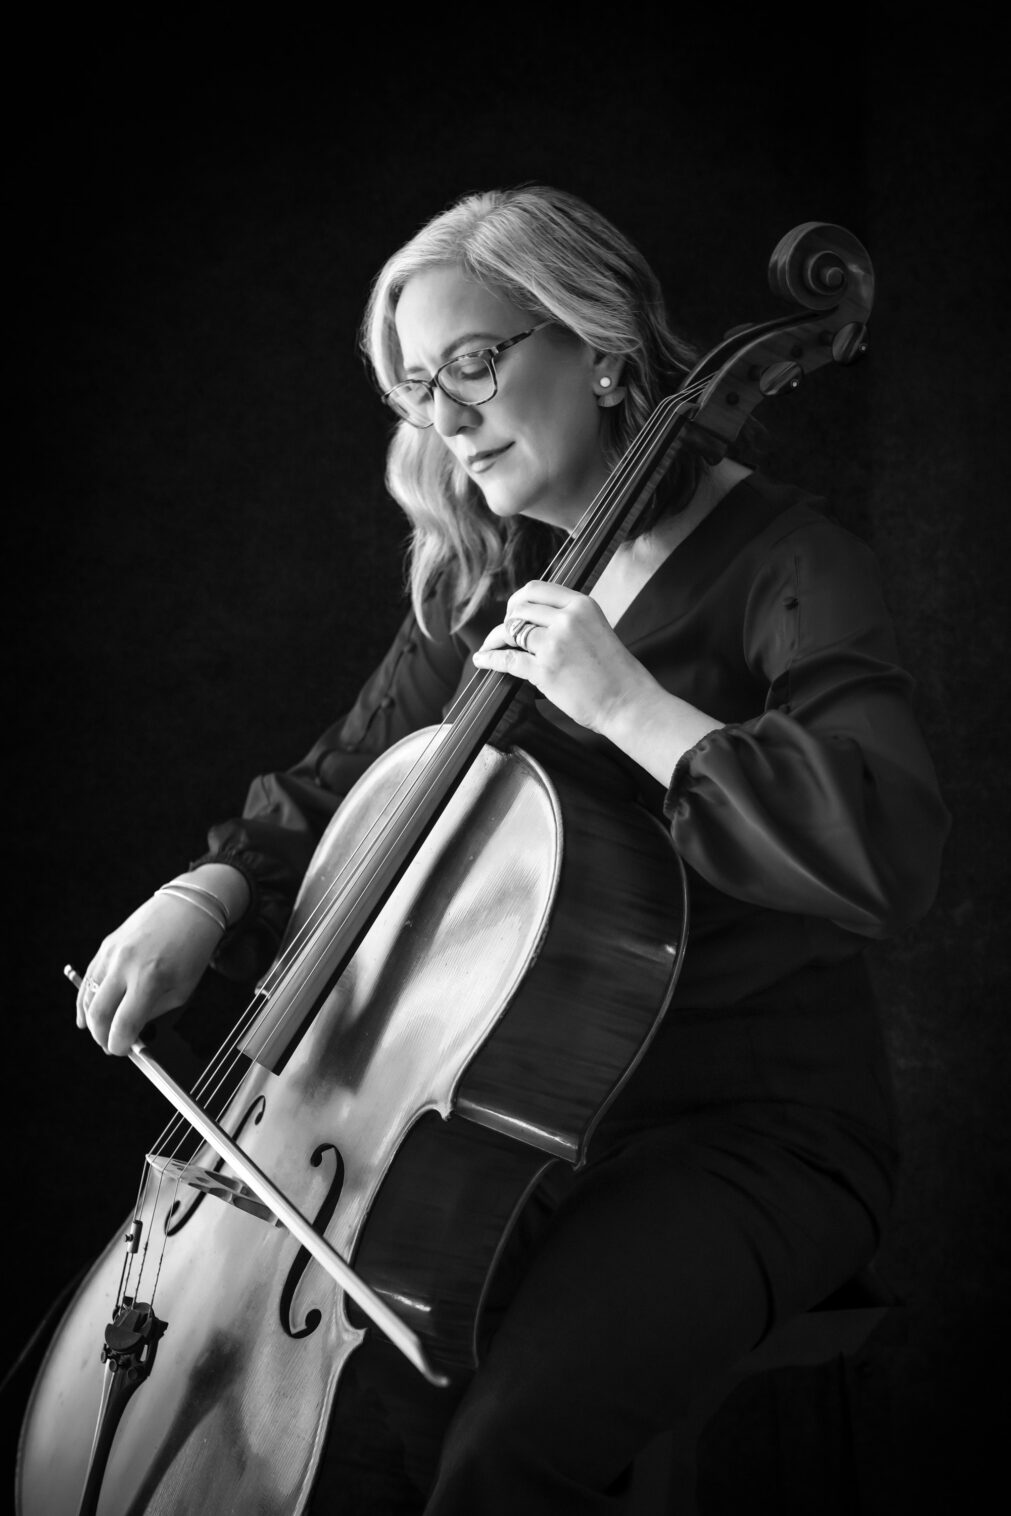 cellist portrait idea